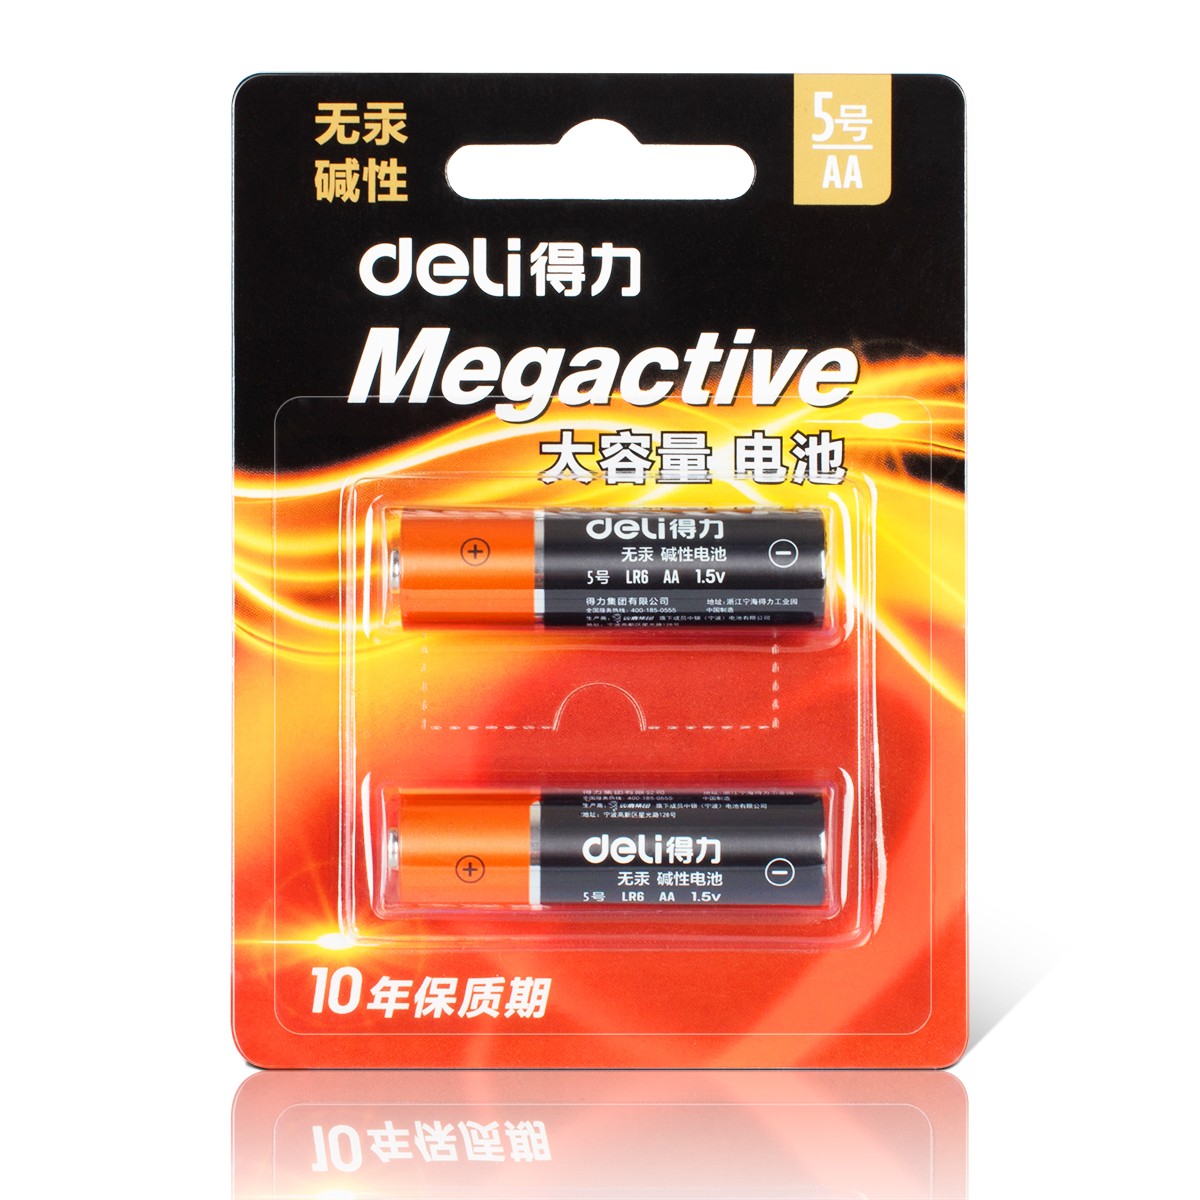 得力(deli) 18500 5号电池 碱性干电池2粒装 适用于 儿童玩具/钟表/遥控器/电子秤/鼠标/电子门锁